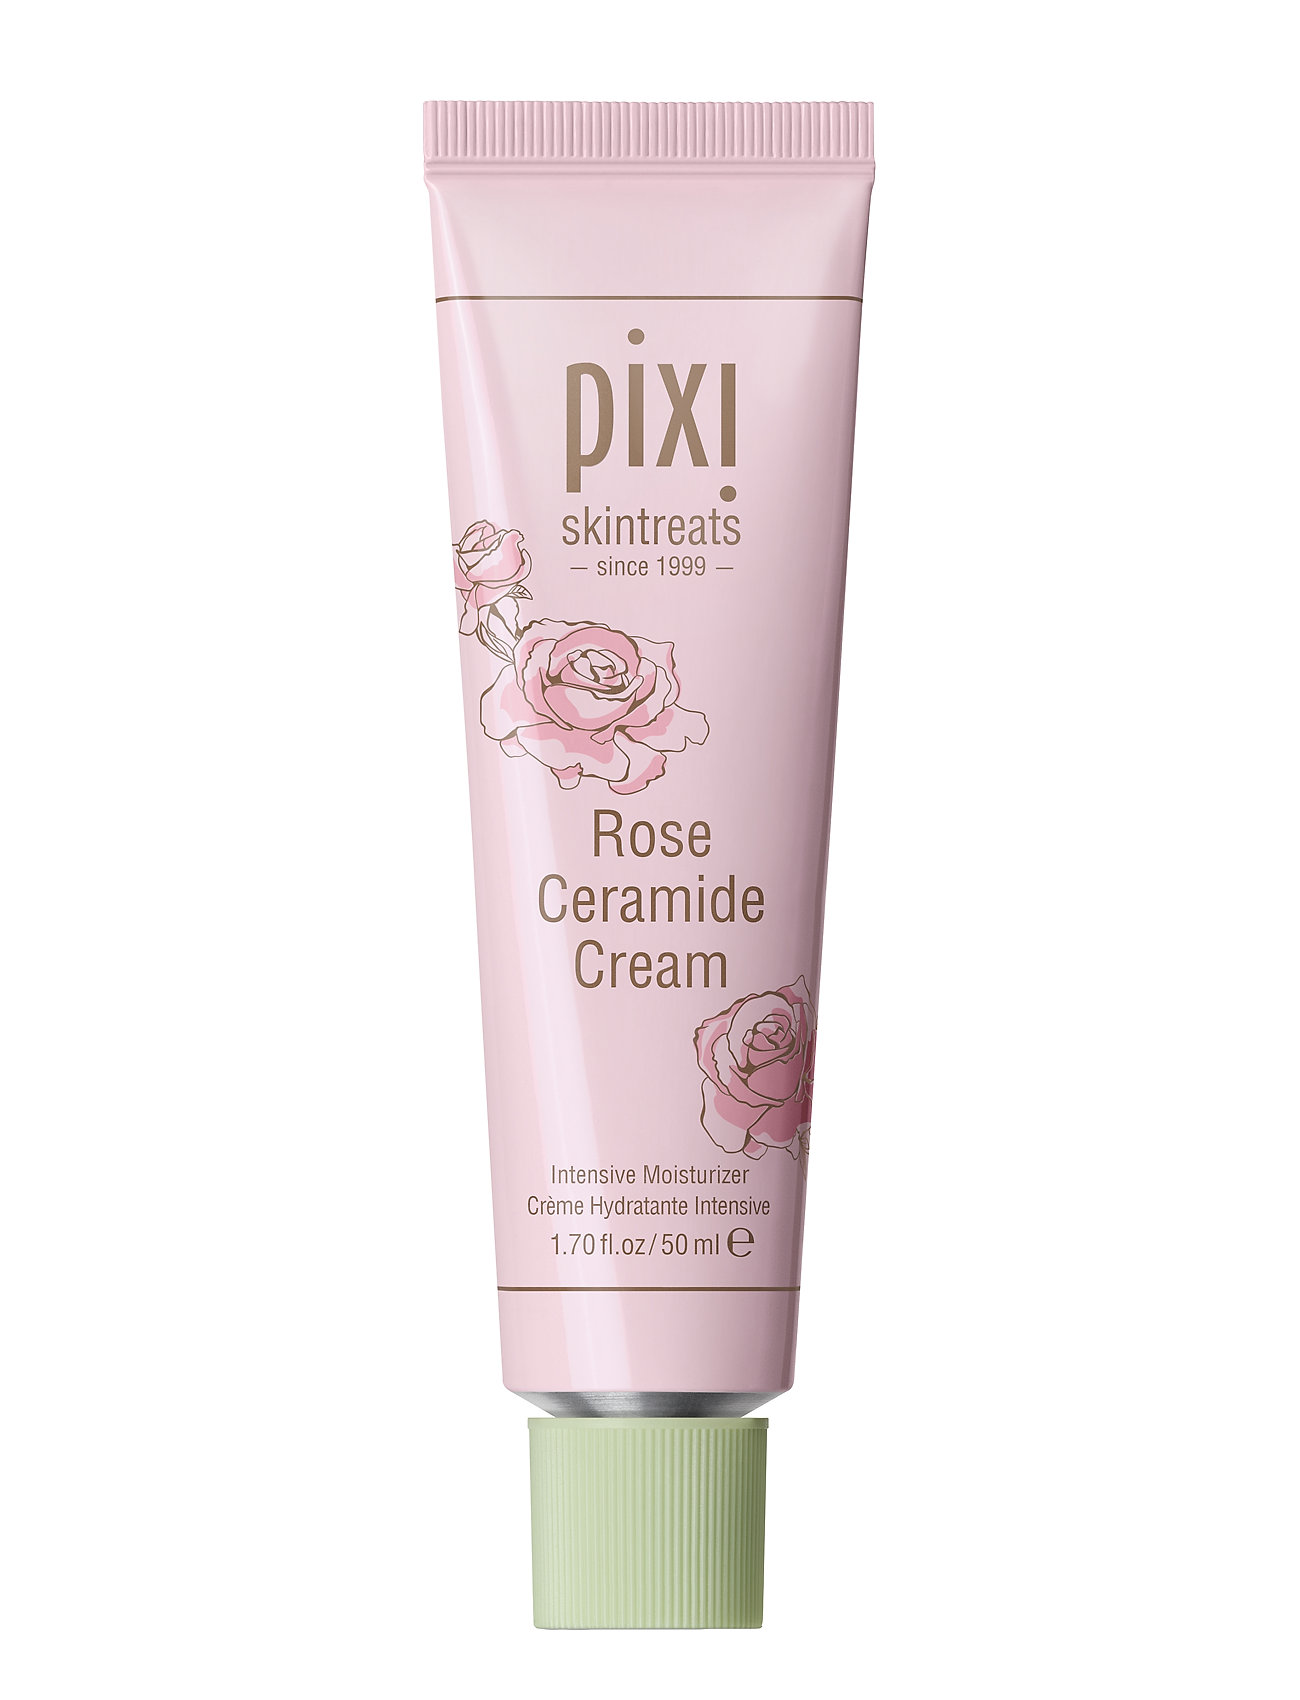 Rose Ceramide Cream Beauty WOMEN Skin Care Face Day Creams Nude Pixi